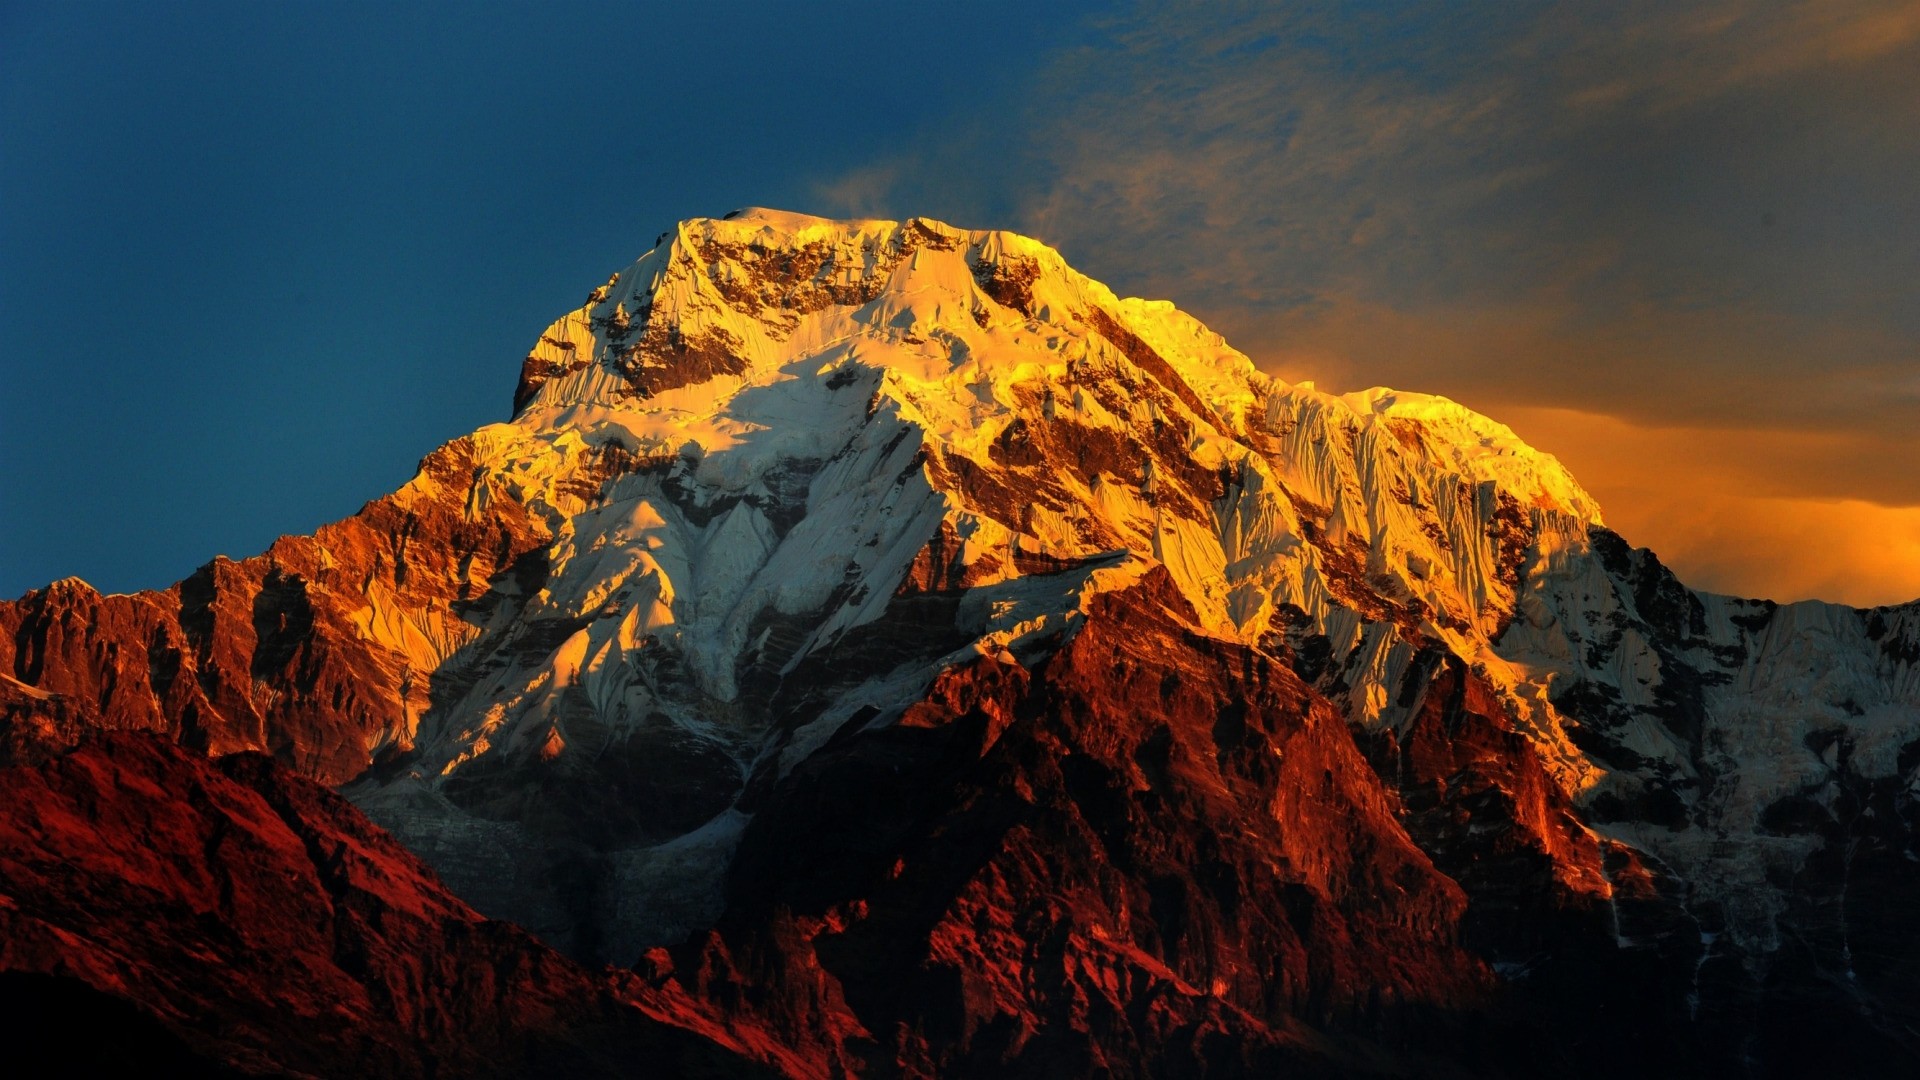 Everest wallpaper for desktop